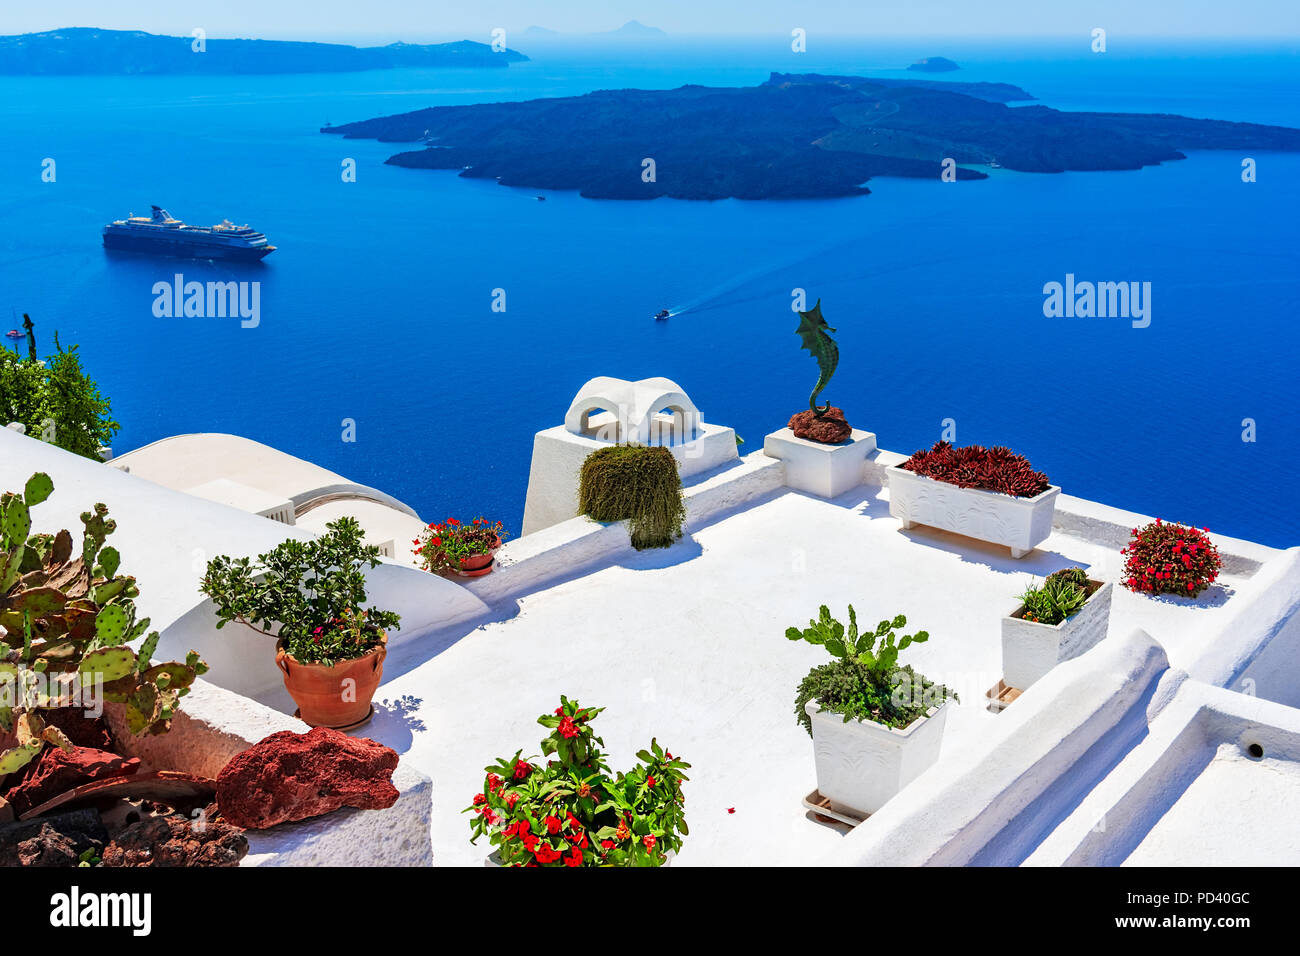 La isla de Santorini, Grecia: Landmark detalle de una terraza decorada con flores sobre el Caldera Caldera Foto de stock